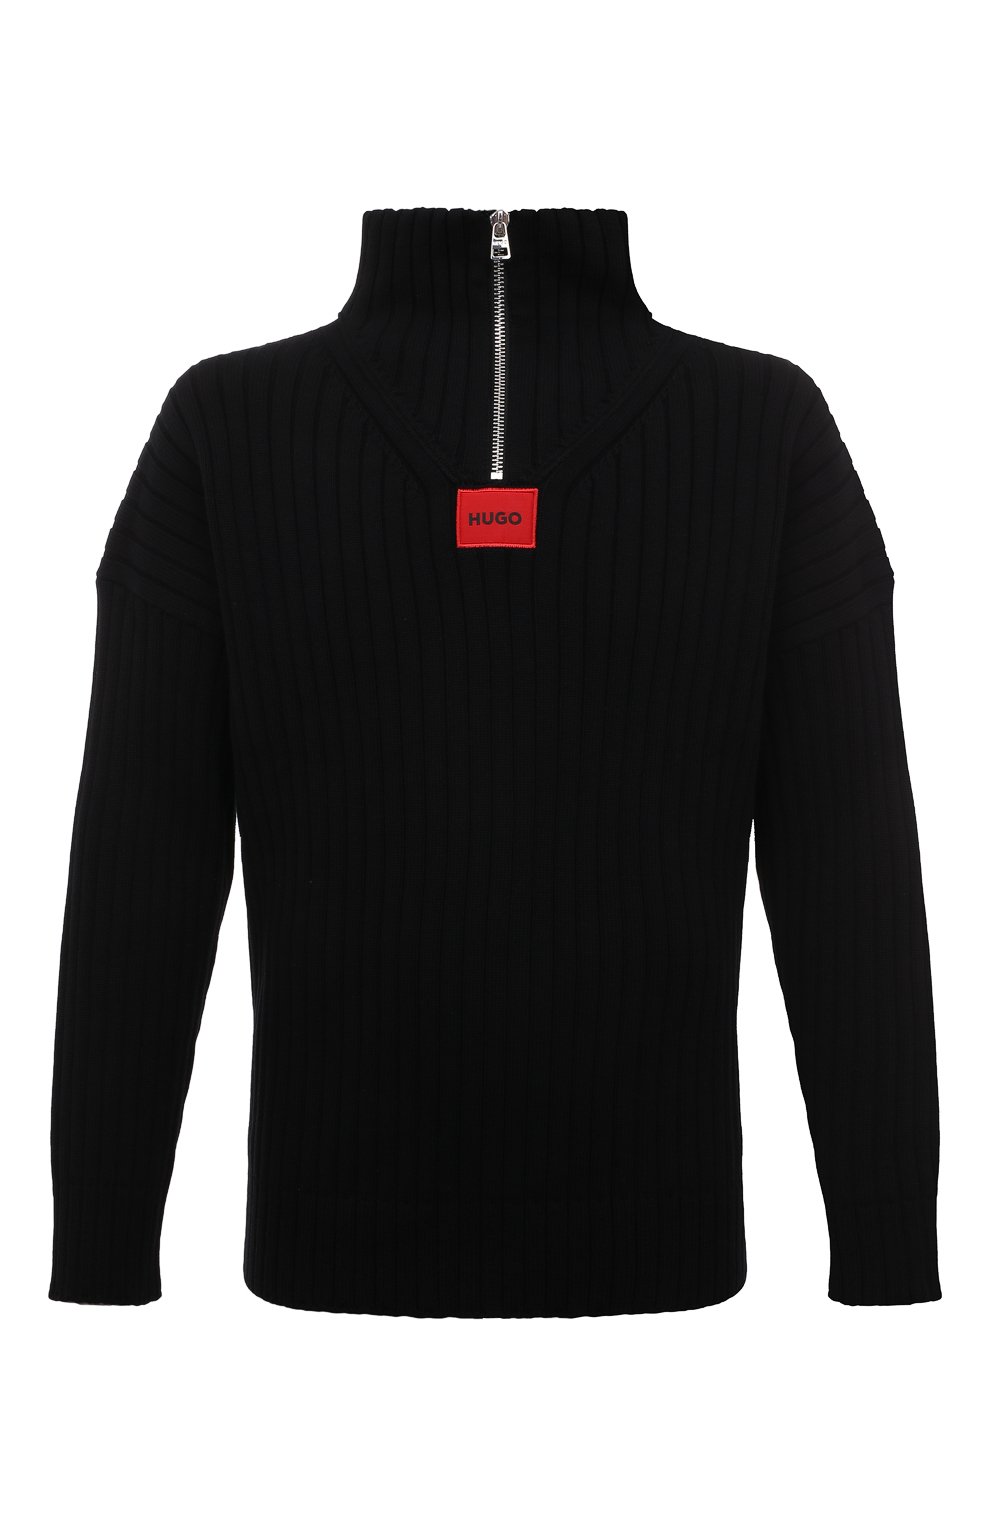 Хлопковый свитер HUGO 50481839, цвет чёрный, размер 48